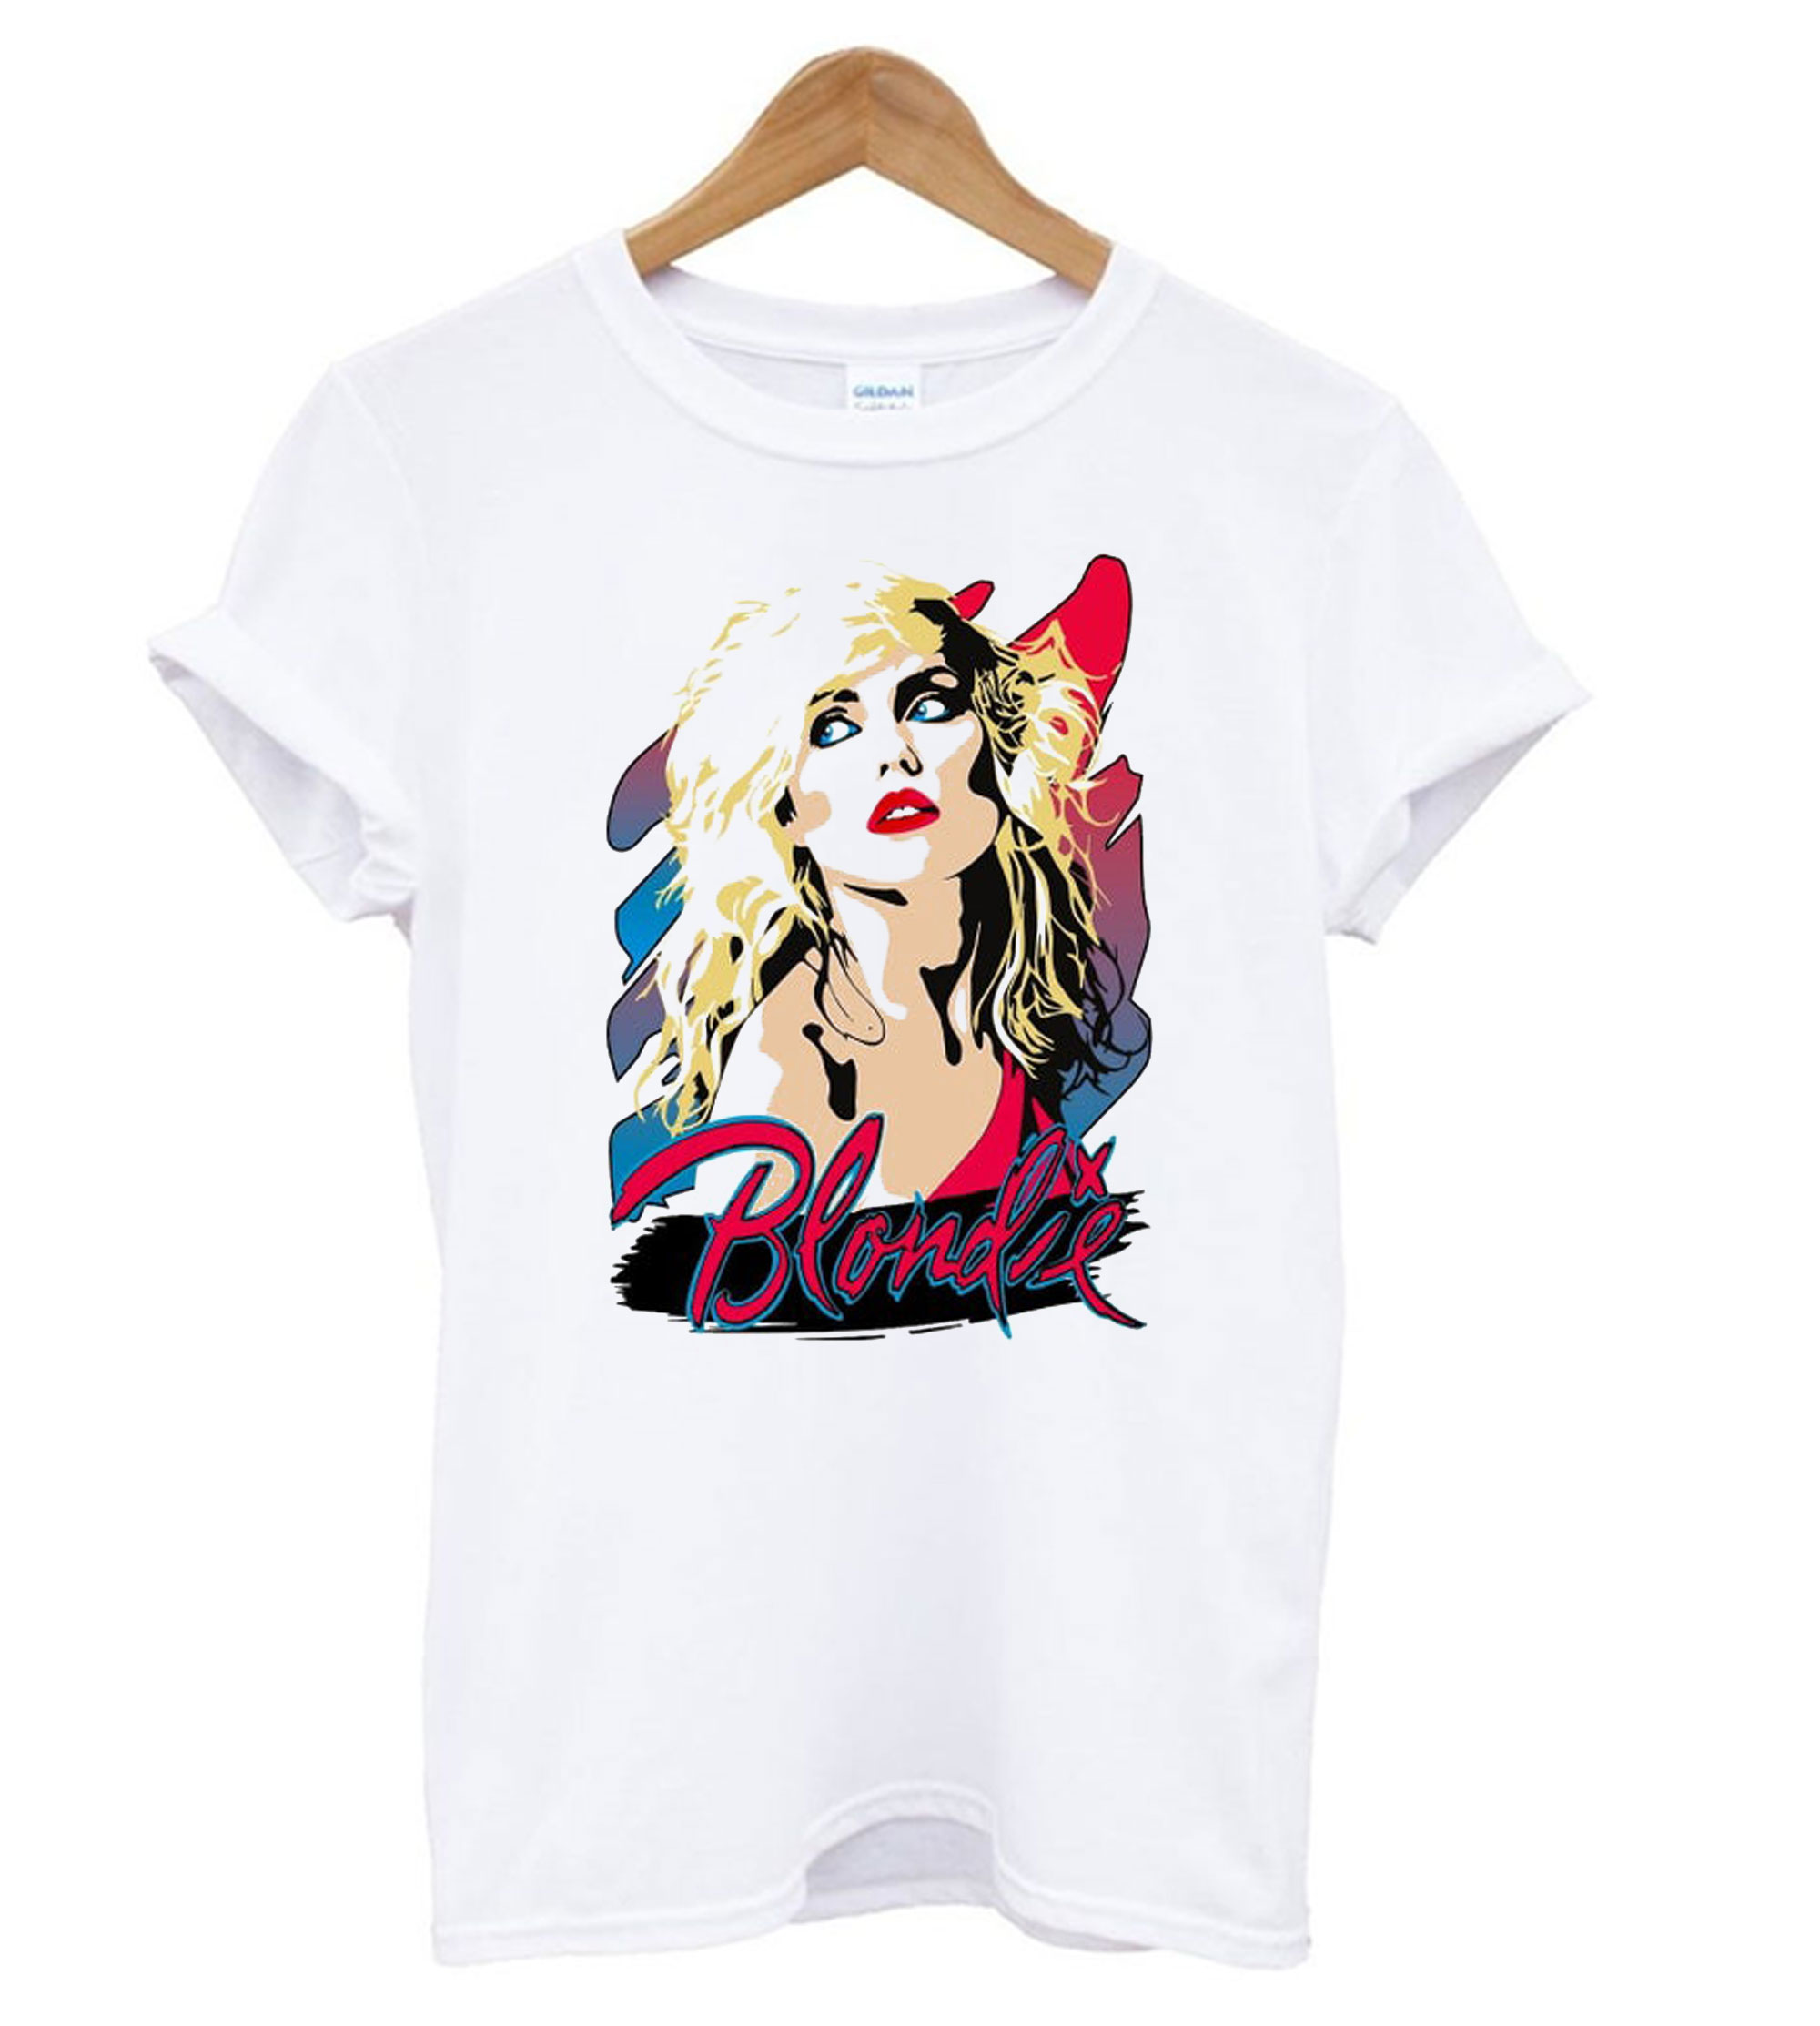 Svaghed træt veltalende Blondie - Debbie Harry T shirt